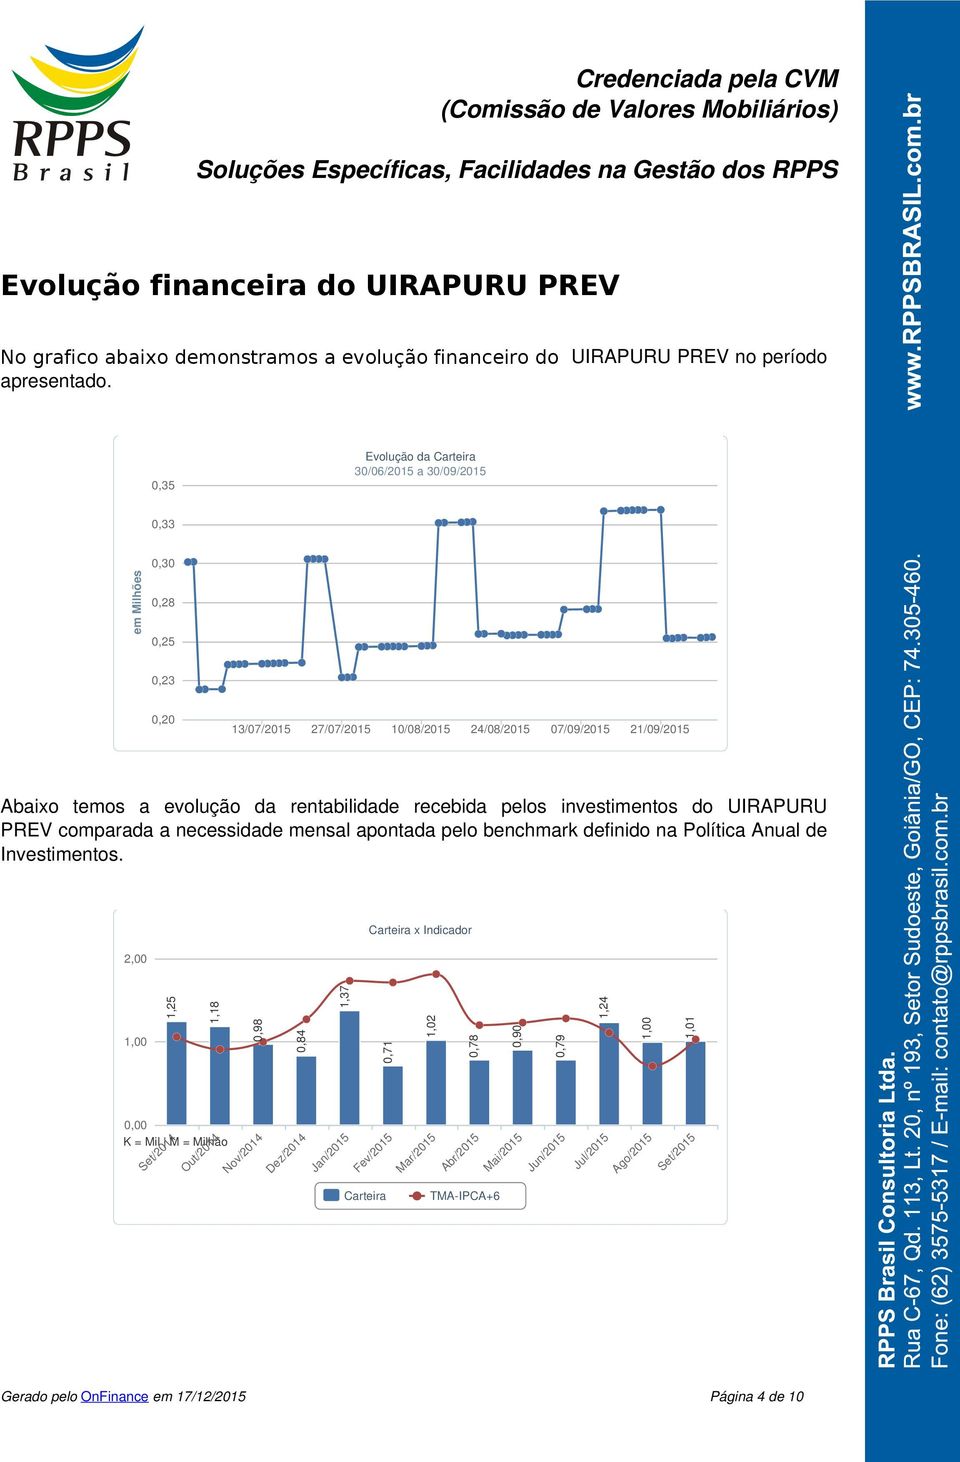 rentabilidade recebida pelos investimentos do UIRAPURU PREV comparada a necessidade mensal apontada pelo benchmark definido na Política Anual de Investimentos.